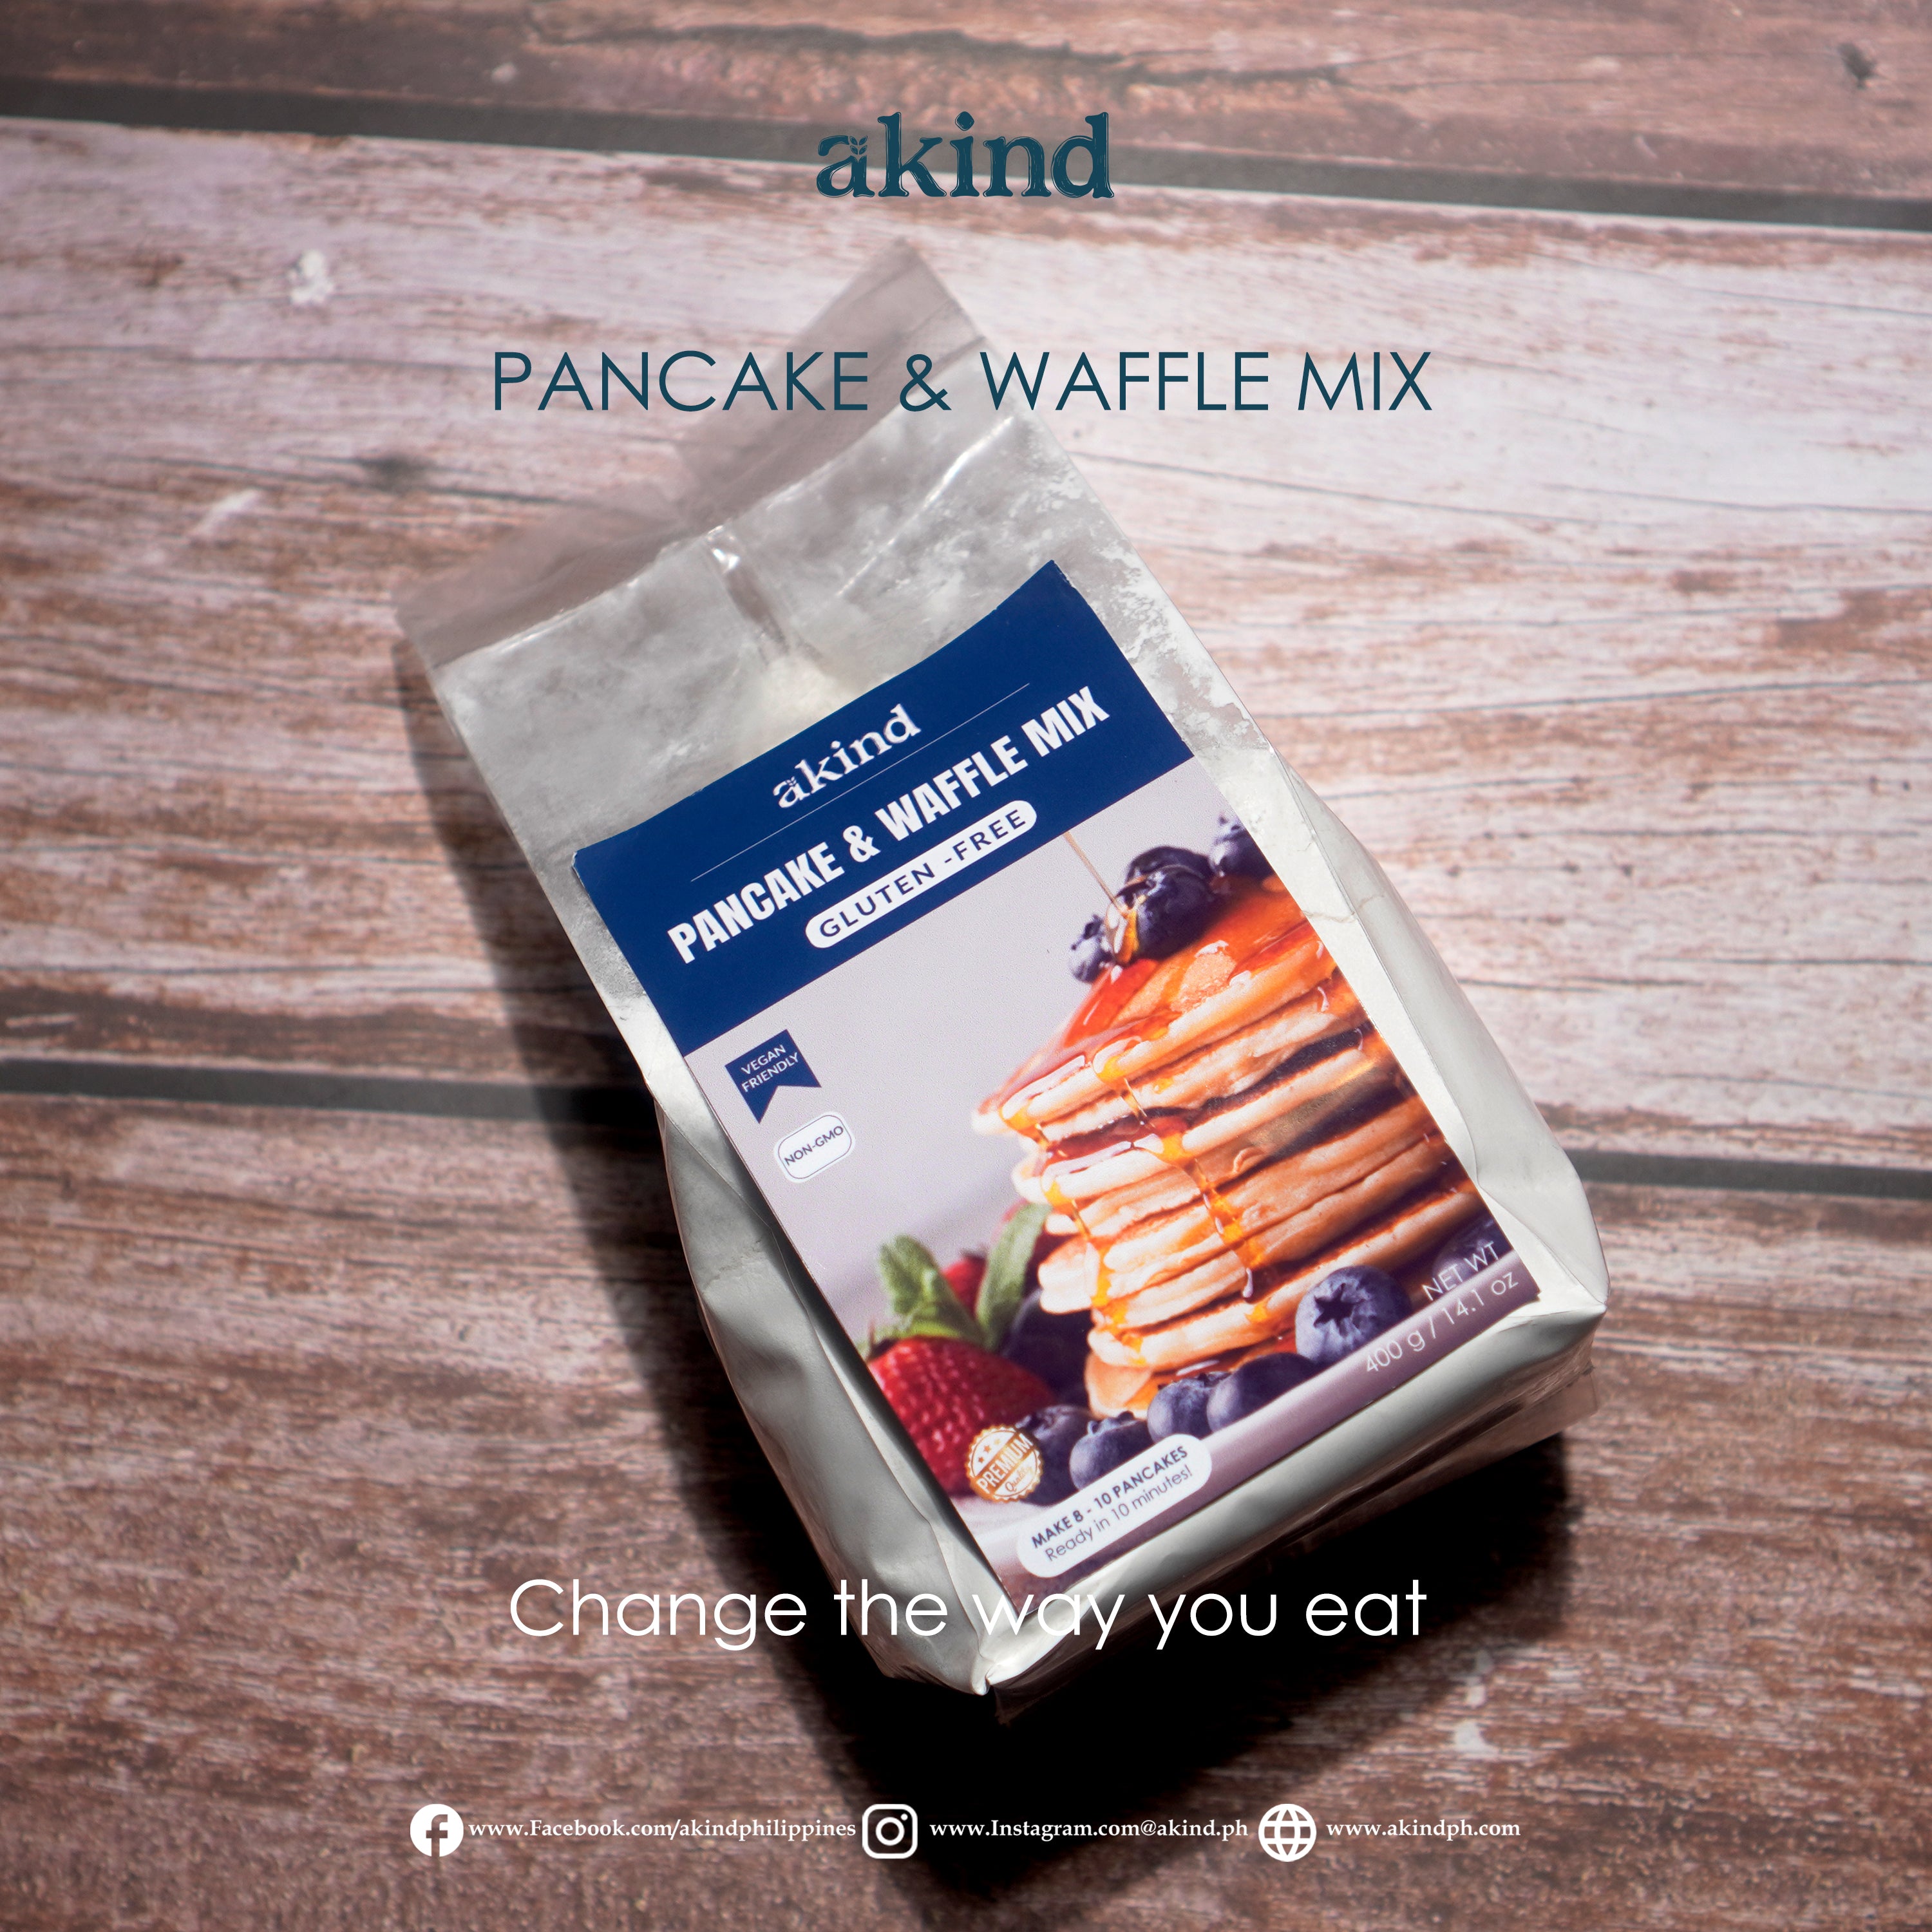 Akind Gluten - Free Pancake & Waffle Mix